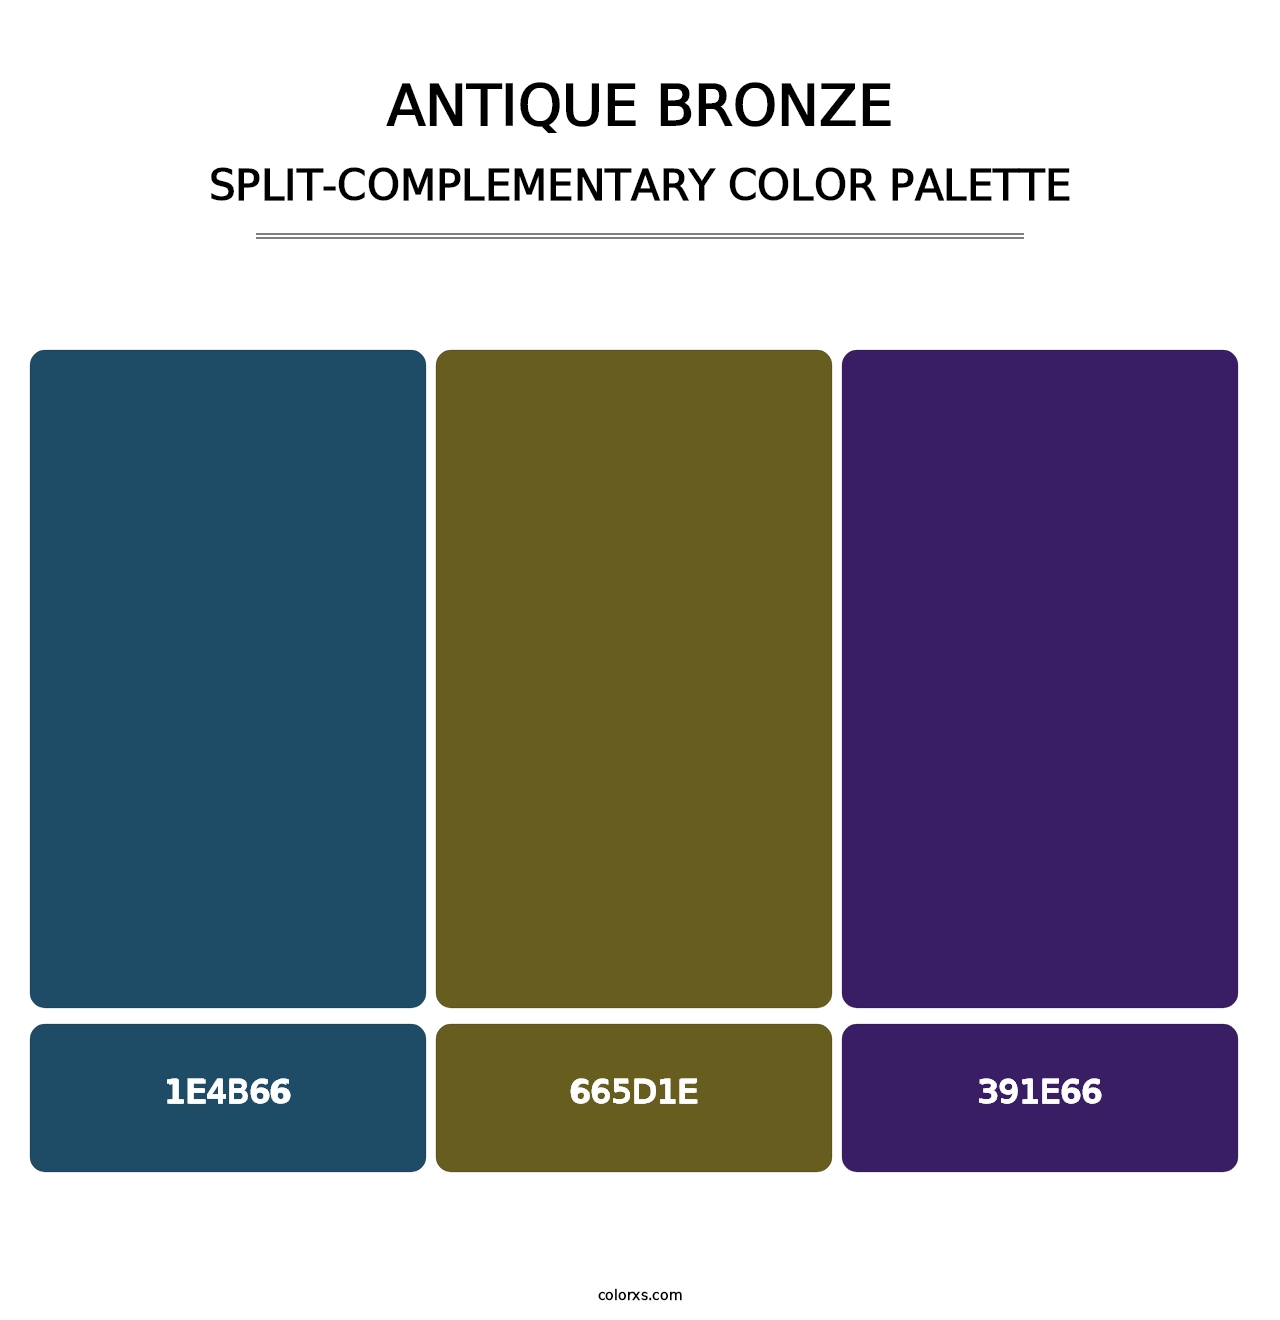 Antique Bronze - Split-Complementary Color Palette